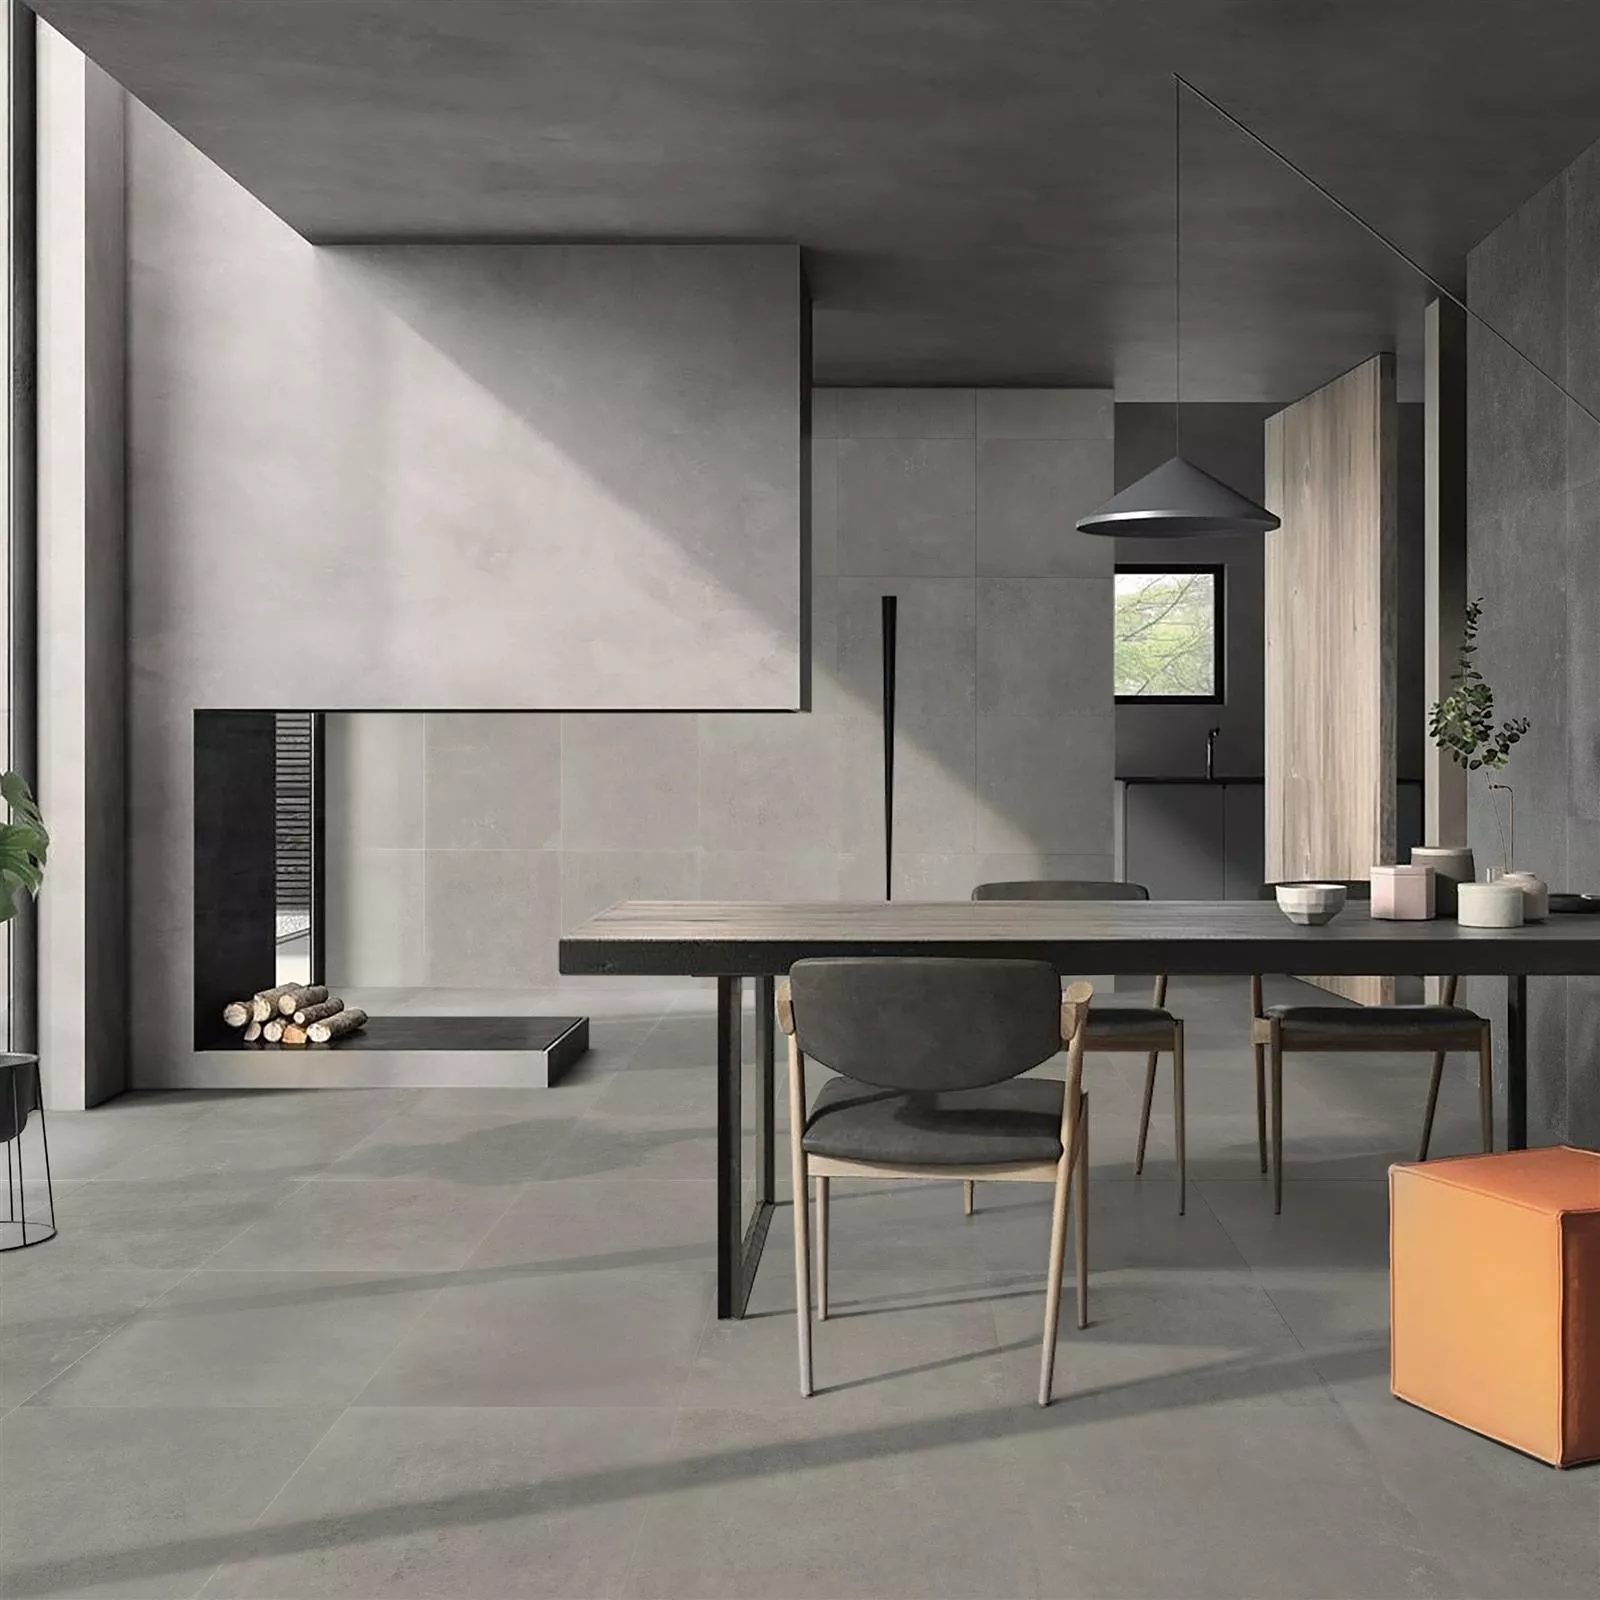 Floor Tiles Cement Optic Nepal Slim Grey Beige 60x60cm